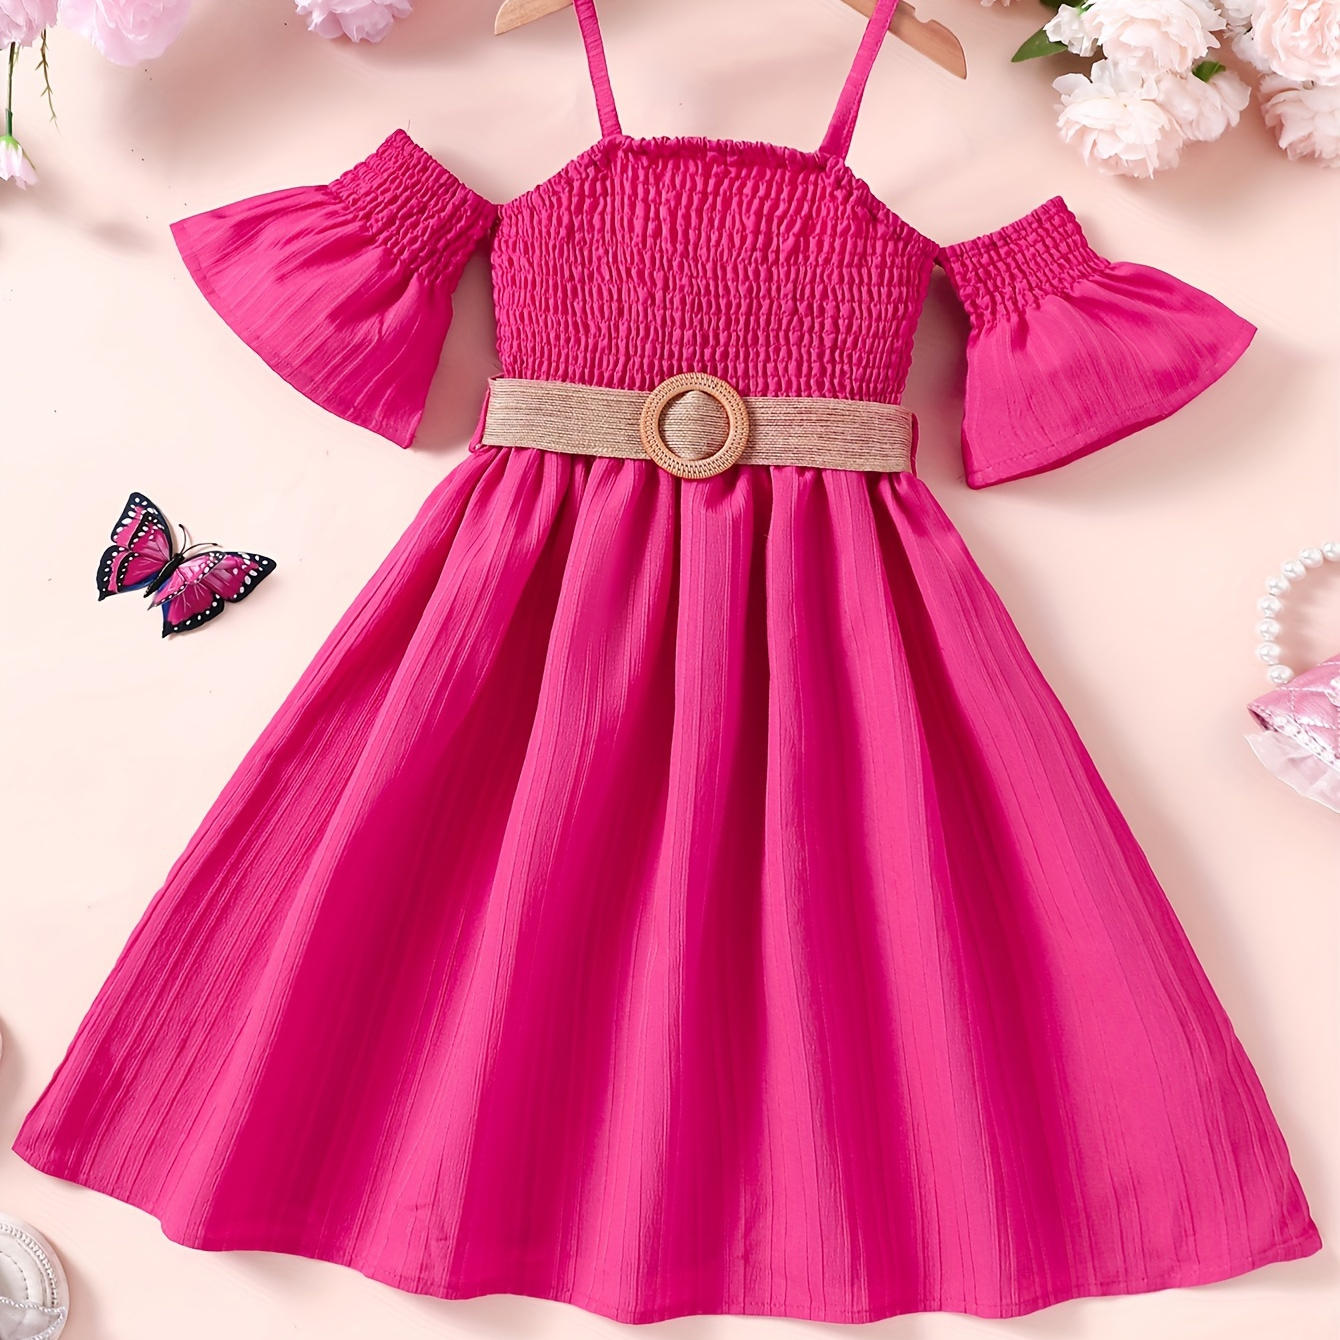 

Fashionable Off-shoulder Dress For Girls, Solid Color Summer Smocked Dress With Belt